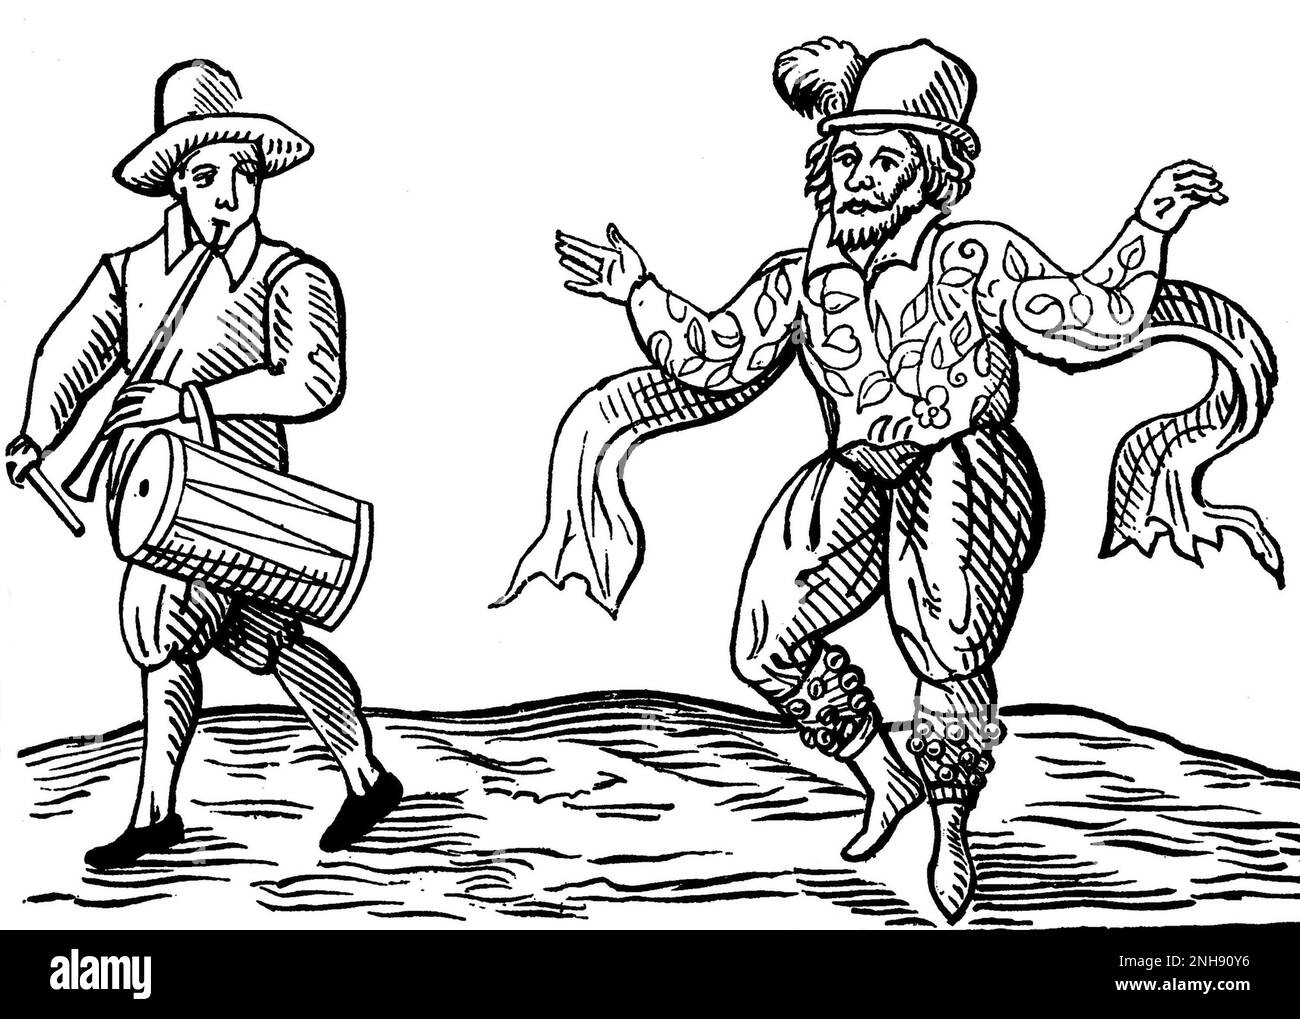 William Kempe (circa 1560-1603), comunemente chiamato Will Kemp, è stato un attore e ballerino inglese specializzato in ruoli comici e meglio conosciuto per essere stato uno dei protagonisti originali dei primi drammi di William Shakespeare. Dopo la sua partenza dagli uomini del Chamberlain, Kemp ha continuato a perseguire la sua carriera come esecutore. Nel febbraio e marzo 1600, si impegnò in quella che avrebbe successivamente chiamato la sua "Nine Days Wonder", in cui morris ballò da Londra a Norwich e successivamente pubblicò una descrizione dell'evento, in cui compare questa incisione (1600). Foto Stock